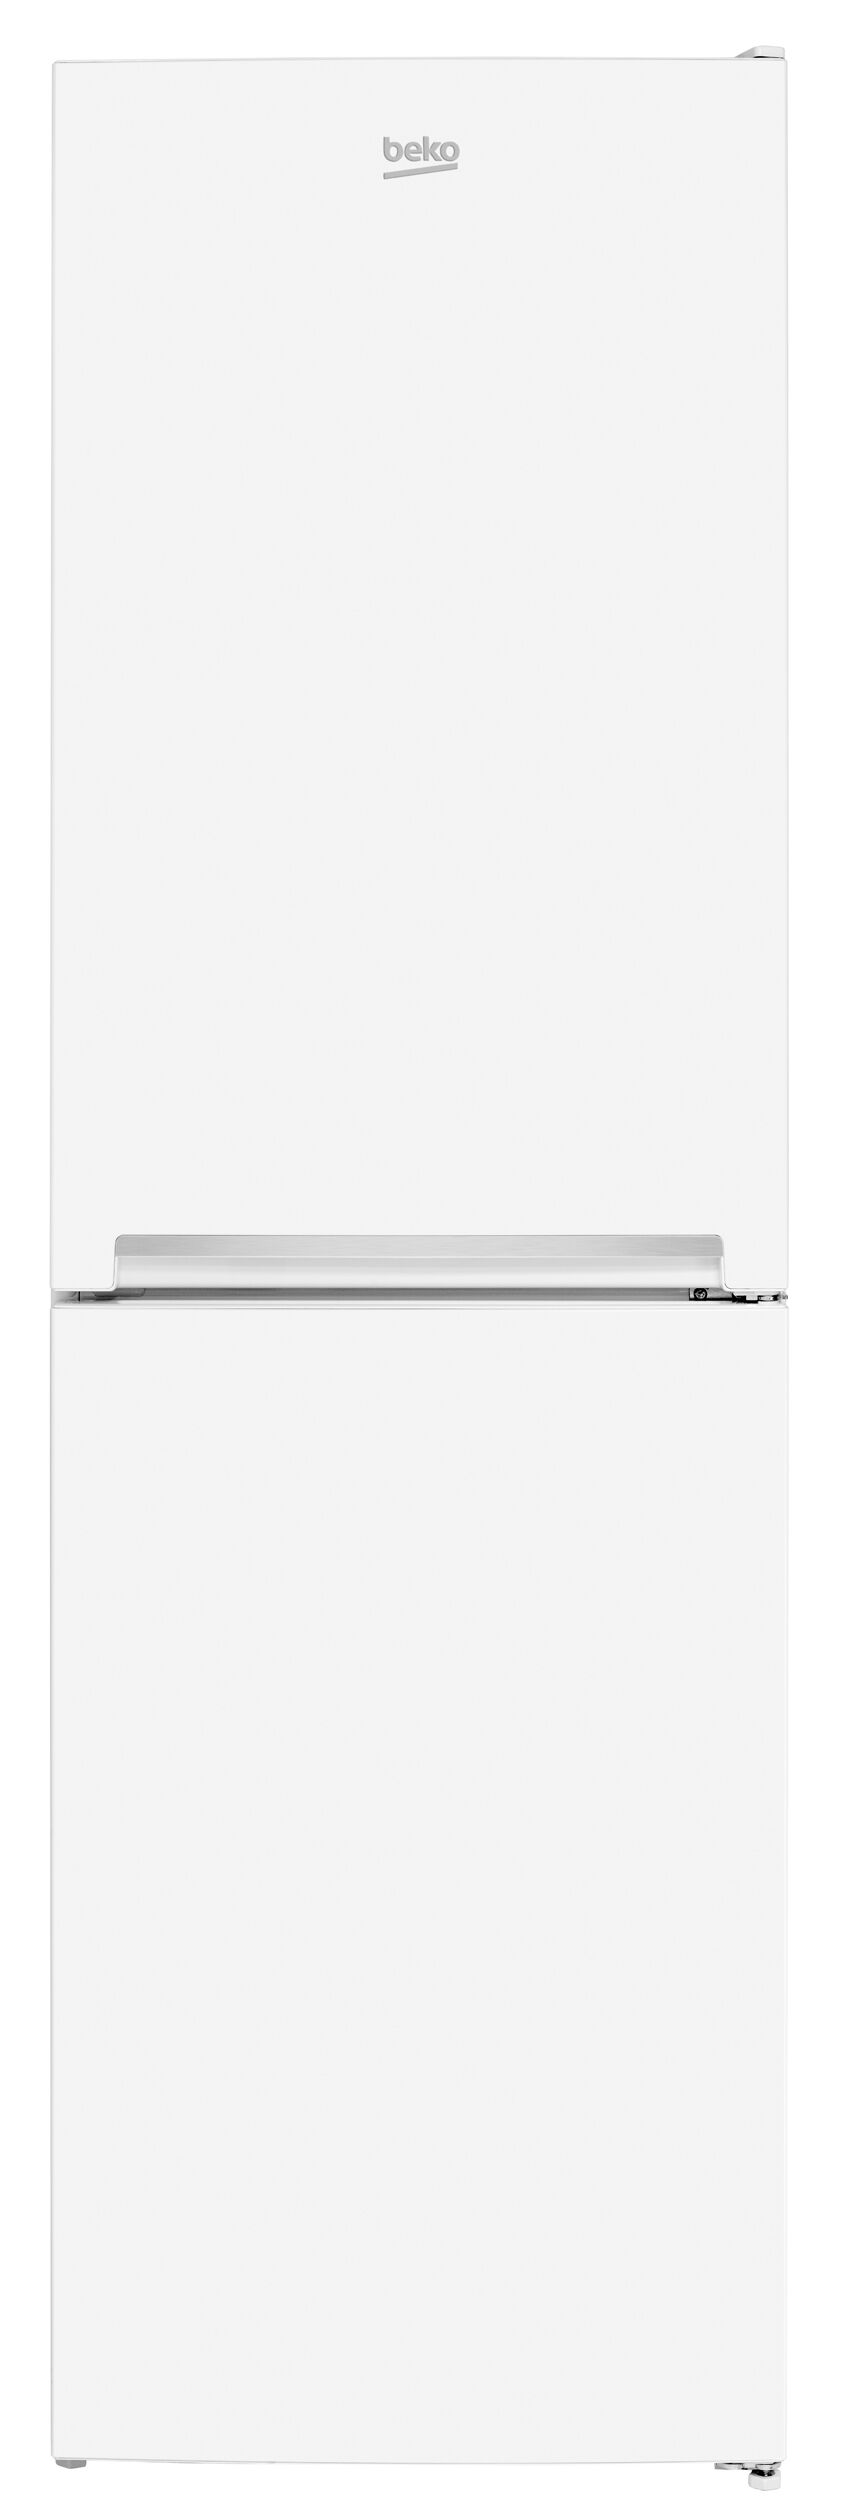 Beko CSG3582W Freestanding Combi Fridge Freezer-White